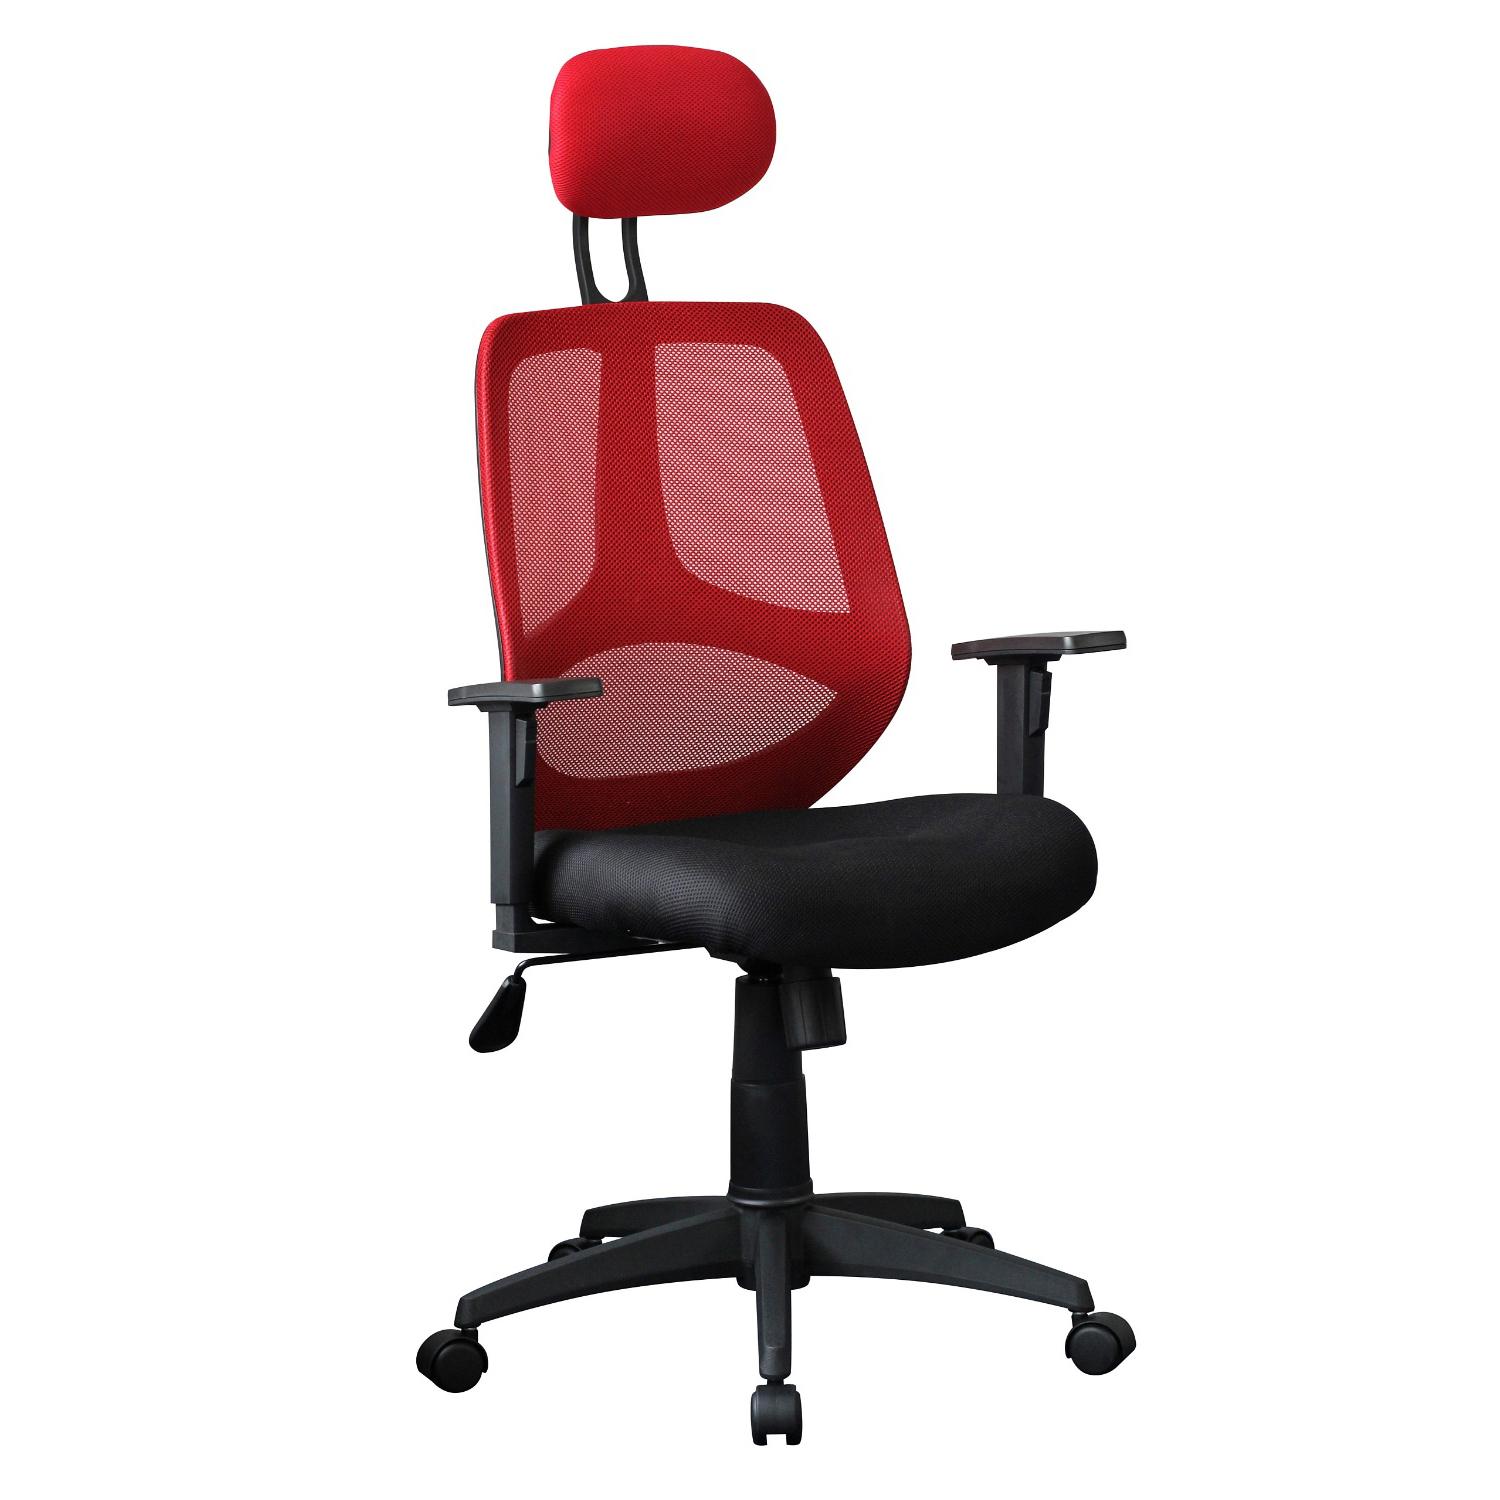 Ergonomischer Bürostuhl DRAKE, verstellbare Kopfstütze und Armlehnen, atmungsaktiver Netzbezug, Farbe Rot / Schwarz